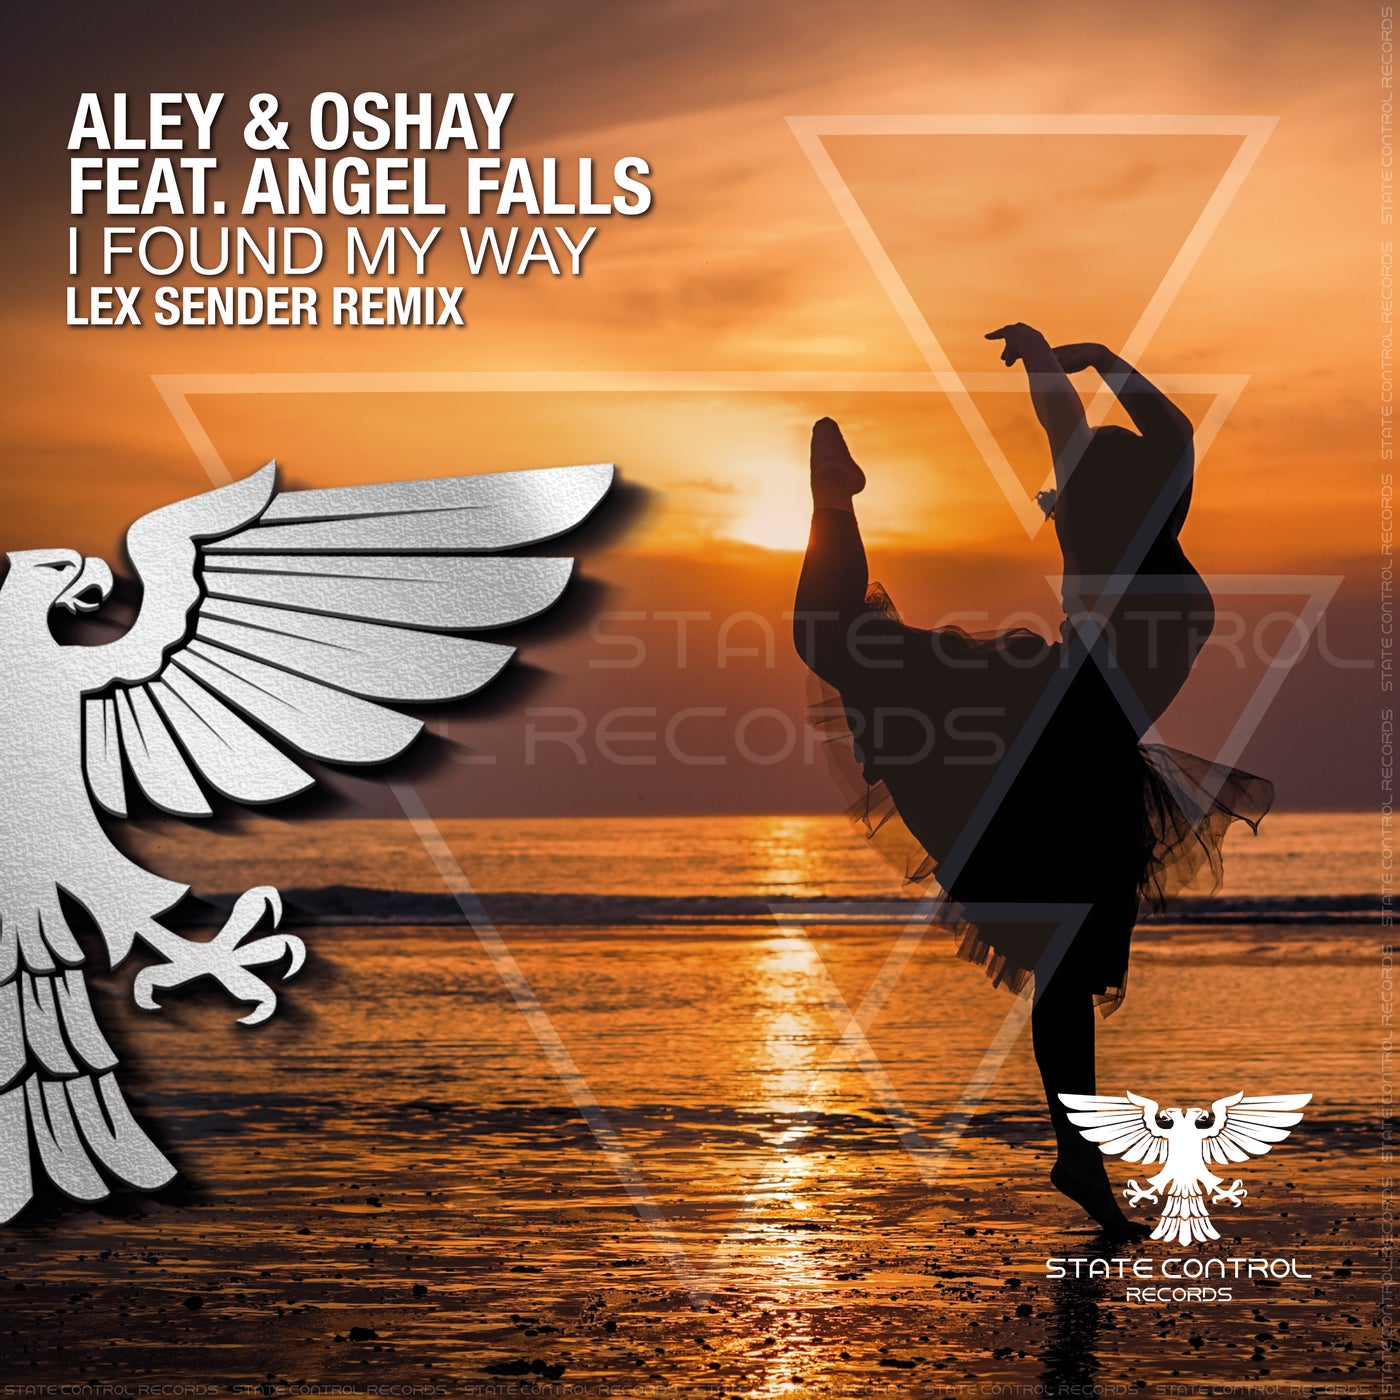 I Found My Way (Lex Sender Remix)